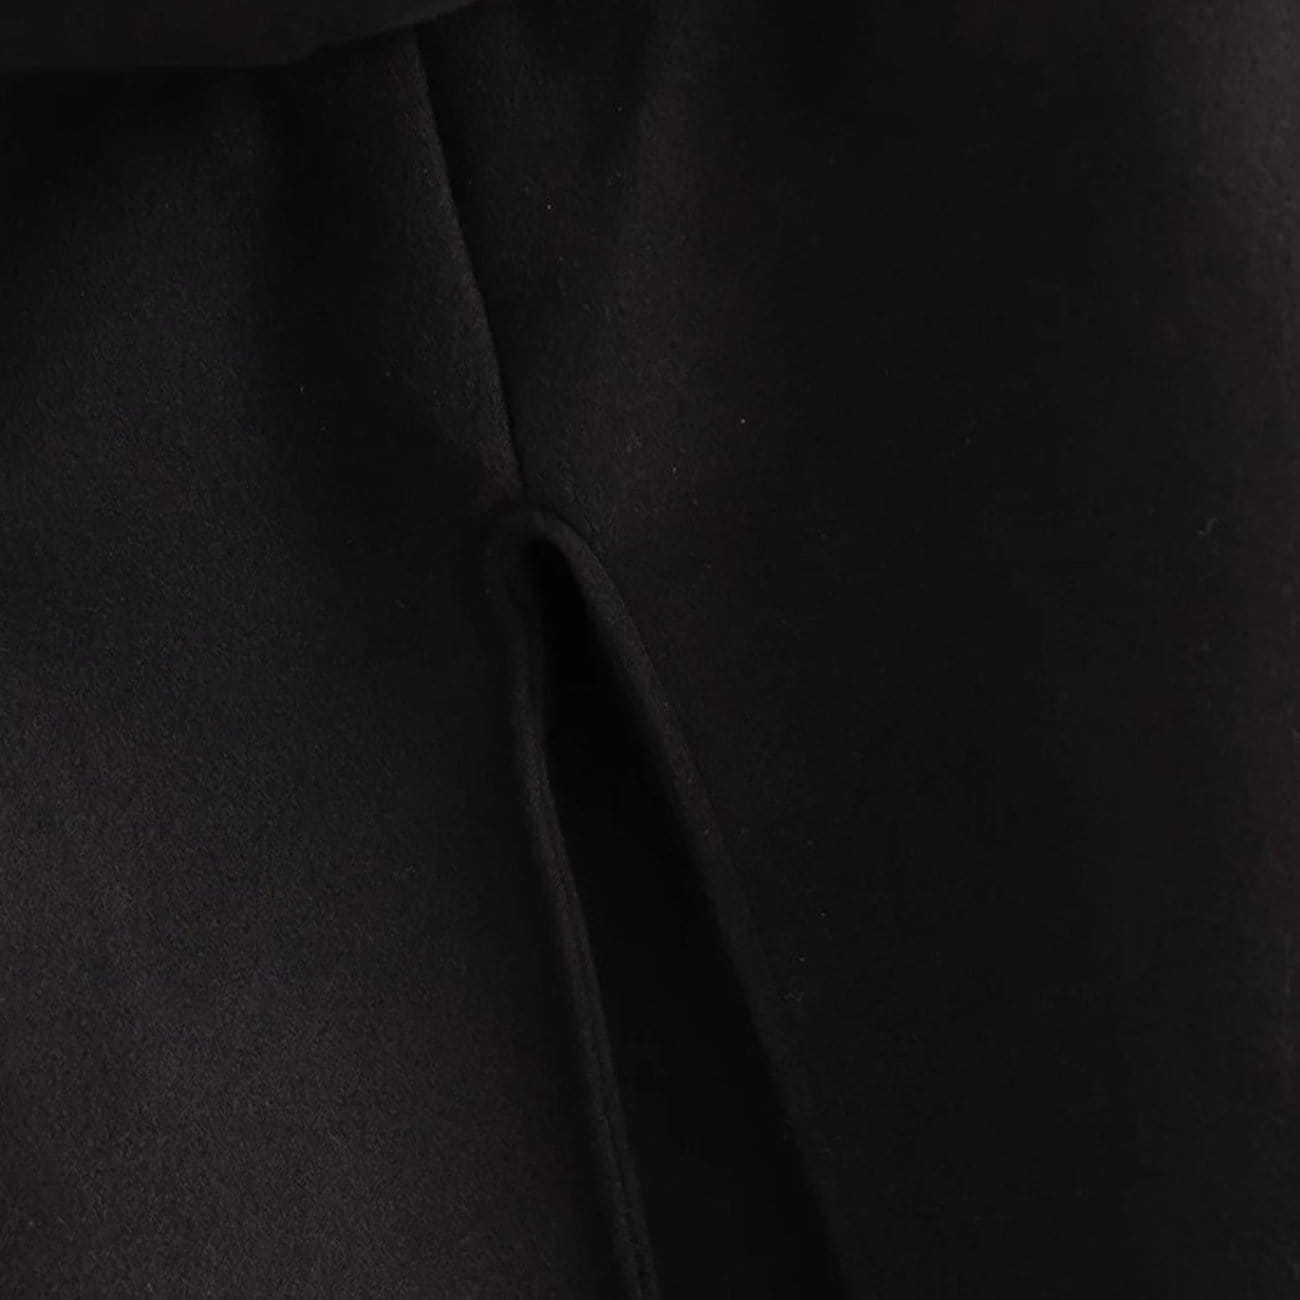 Dark Wizard Hooded Cloak Jacket Streetwear Brand Techwear Combat Tactical YUGEN THEORY